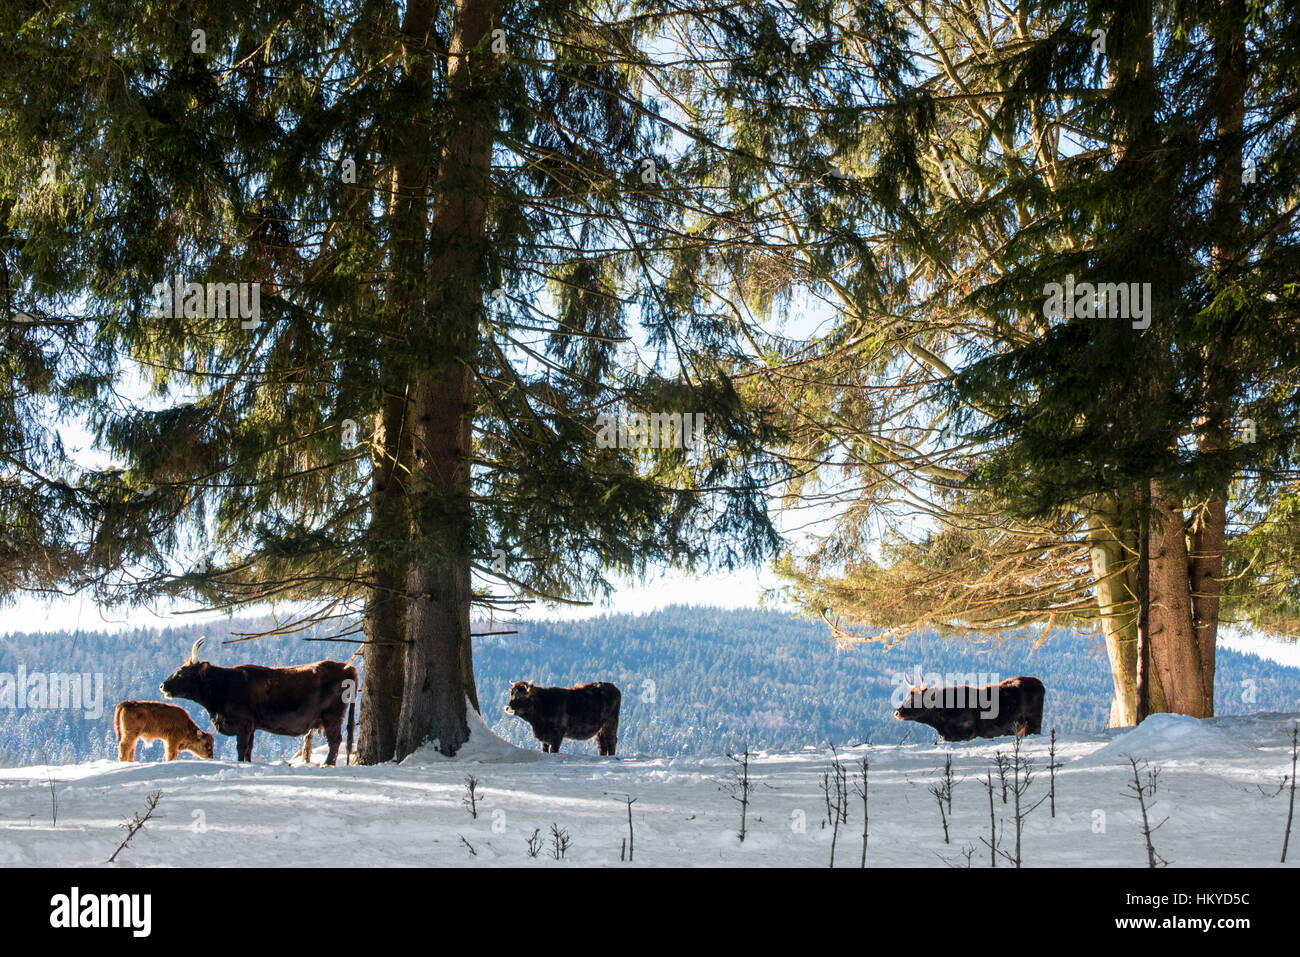 Heck bovins (Bos domesticus) et son veau du troupeau dans la neige en hiver. Tentative de retour la race disparue d'aurochs (Bos primigenius) Banque D'Images